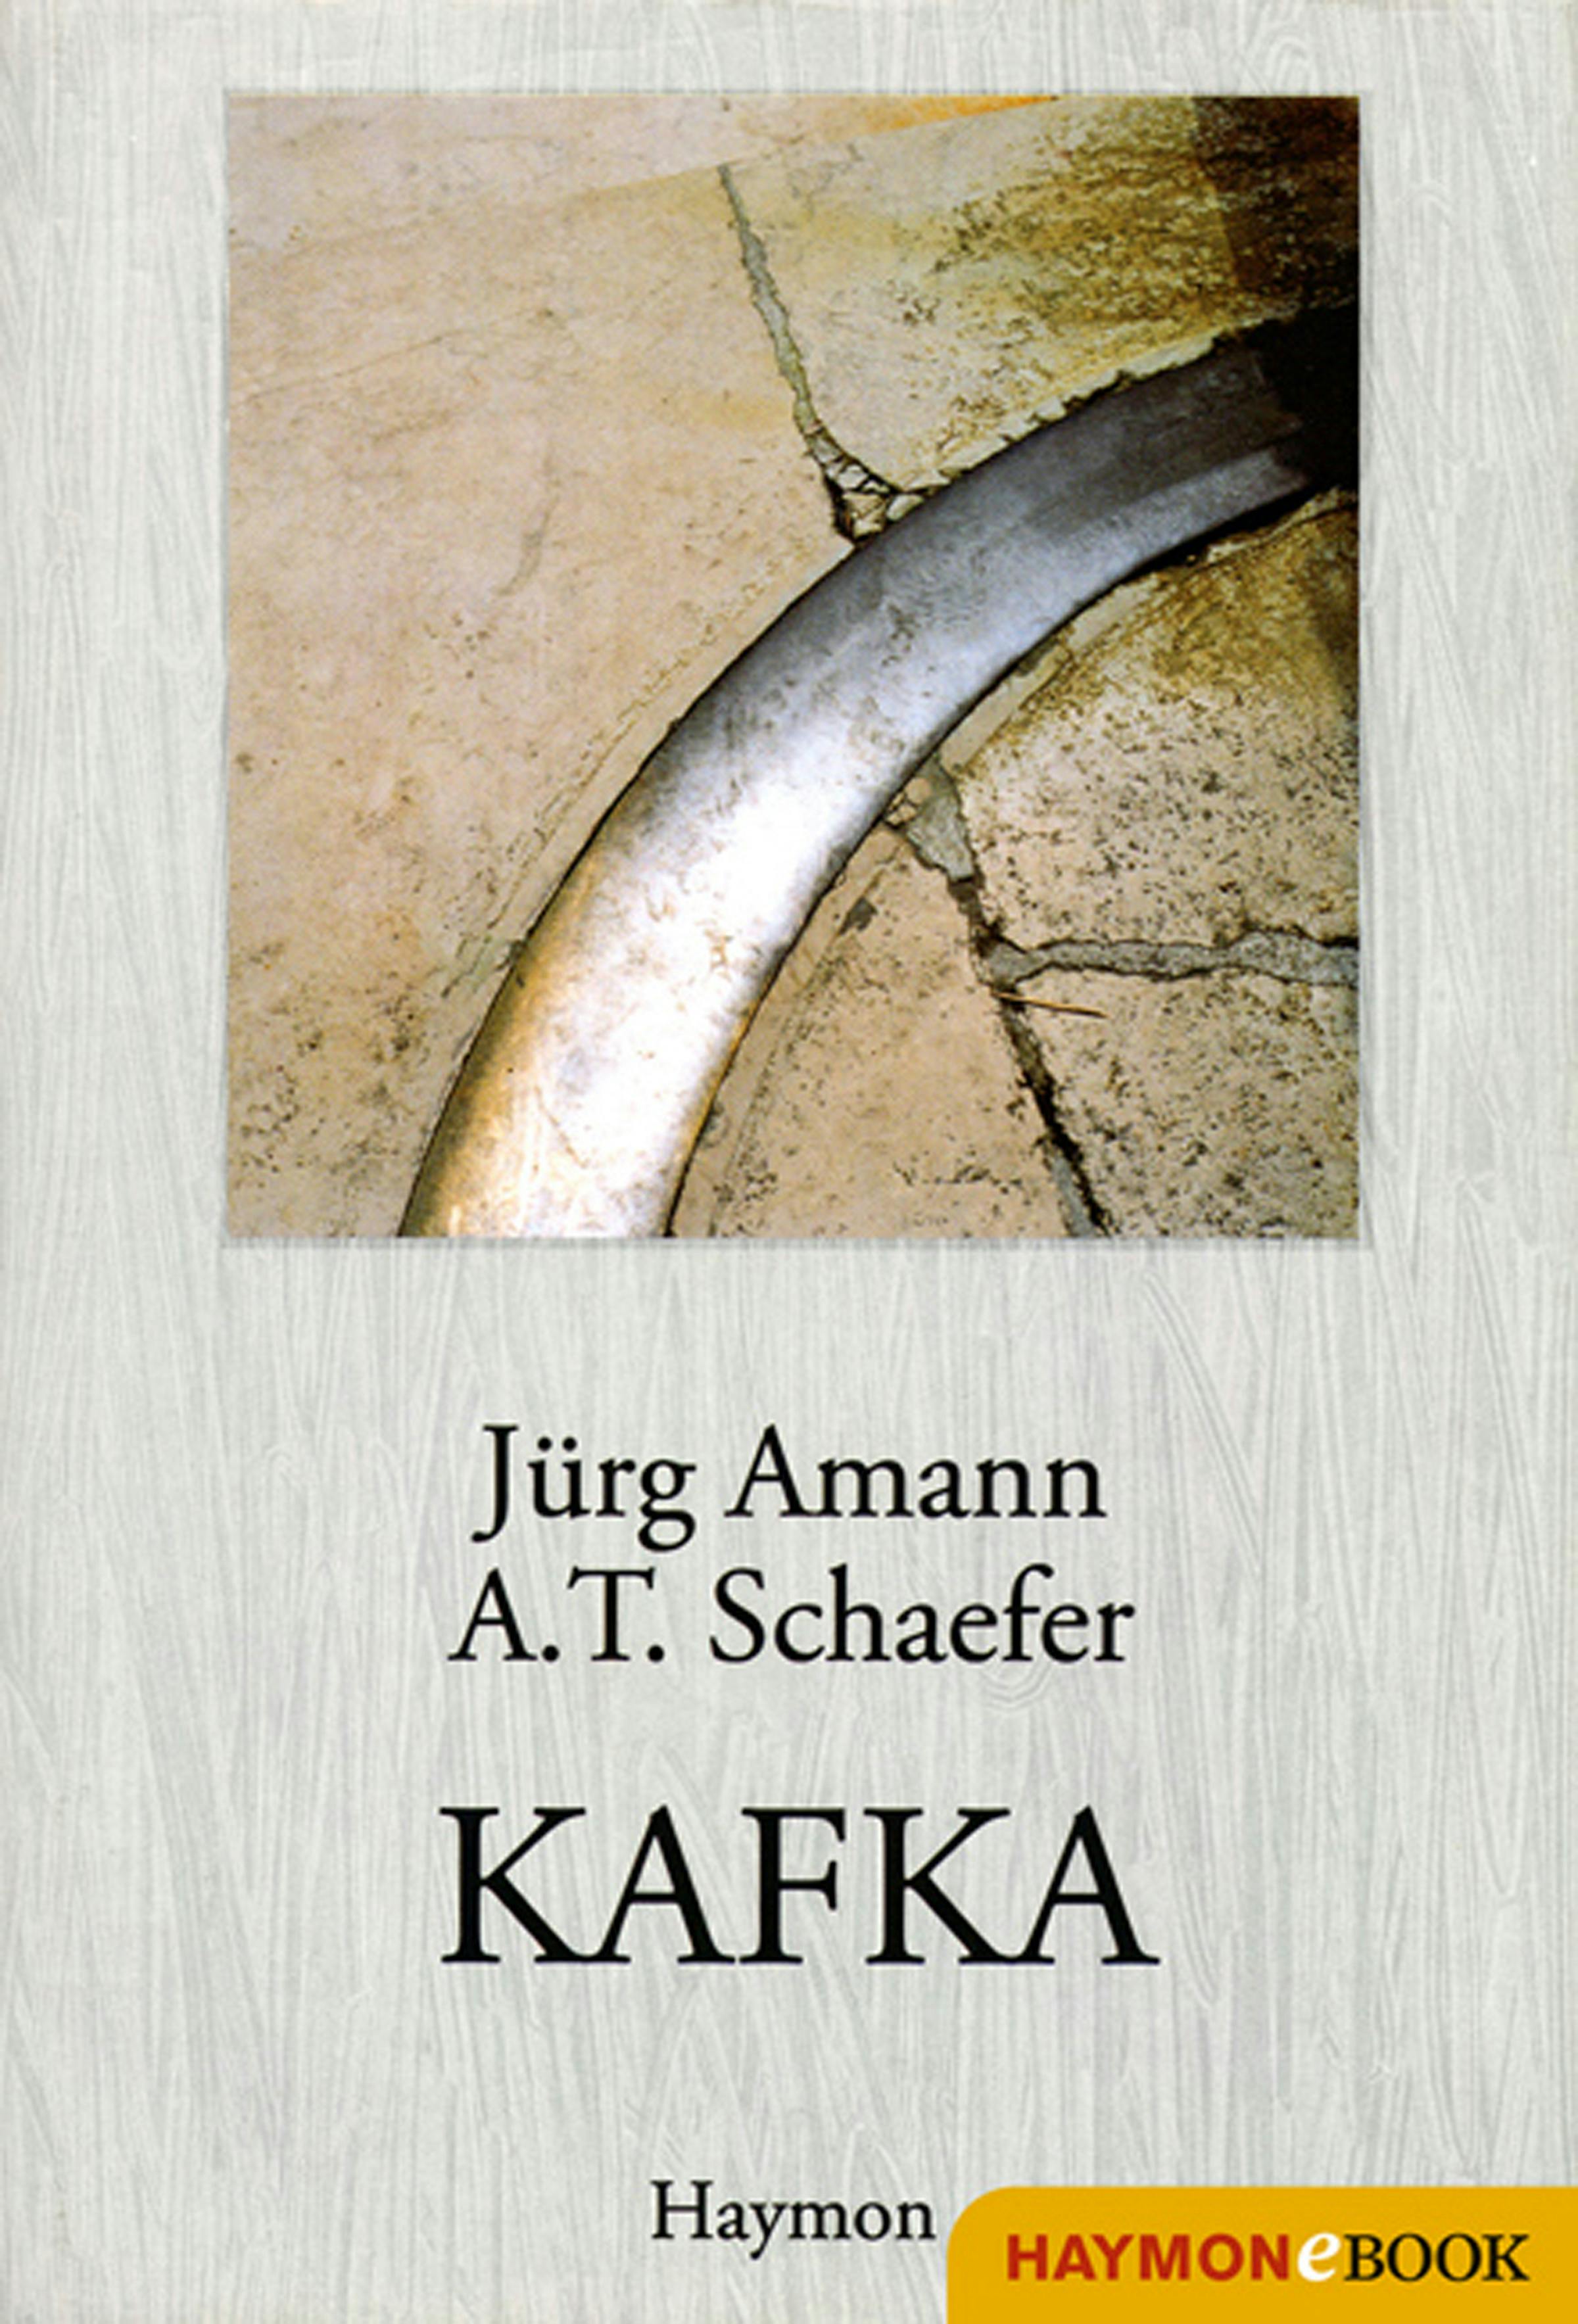 KAFKA: Essay - A. T. Schaefer, Jürg Amann